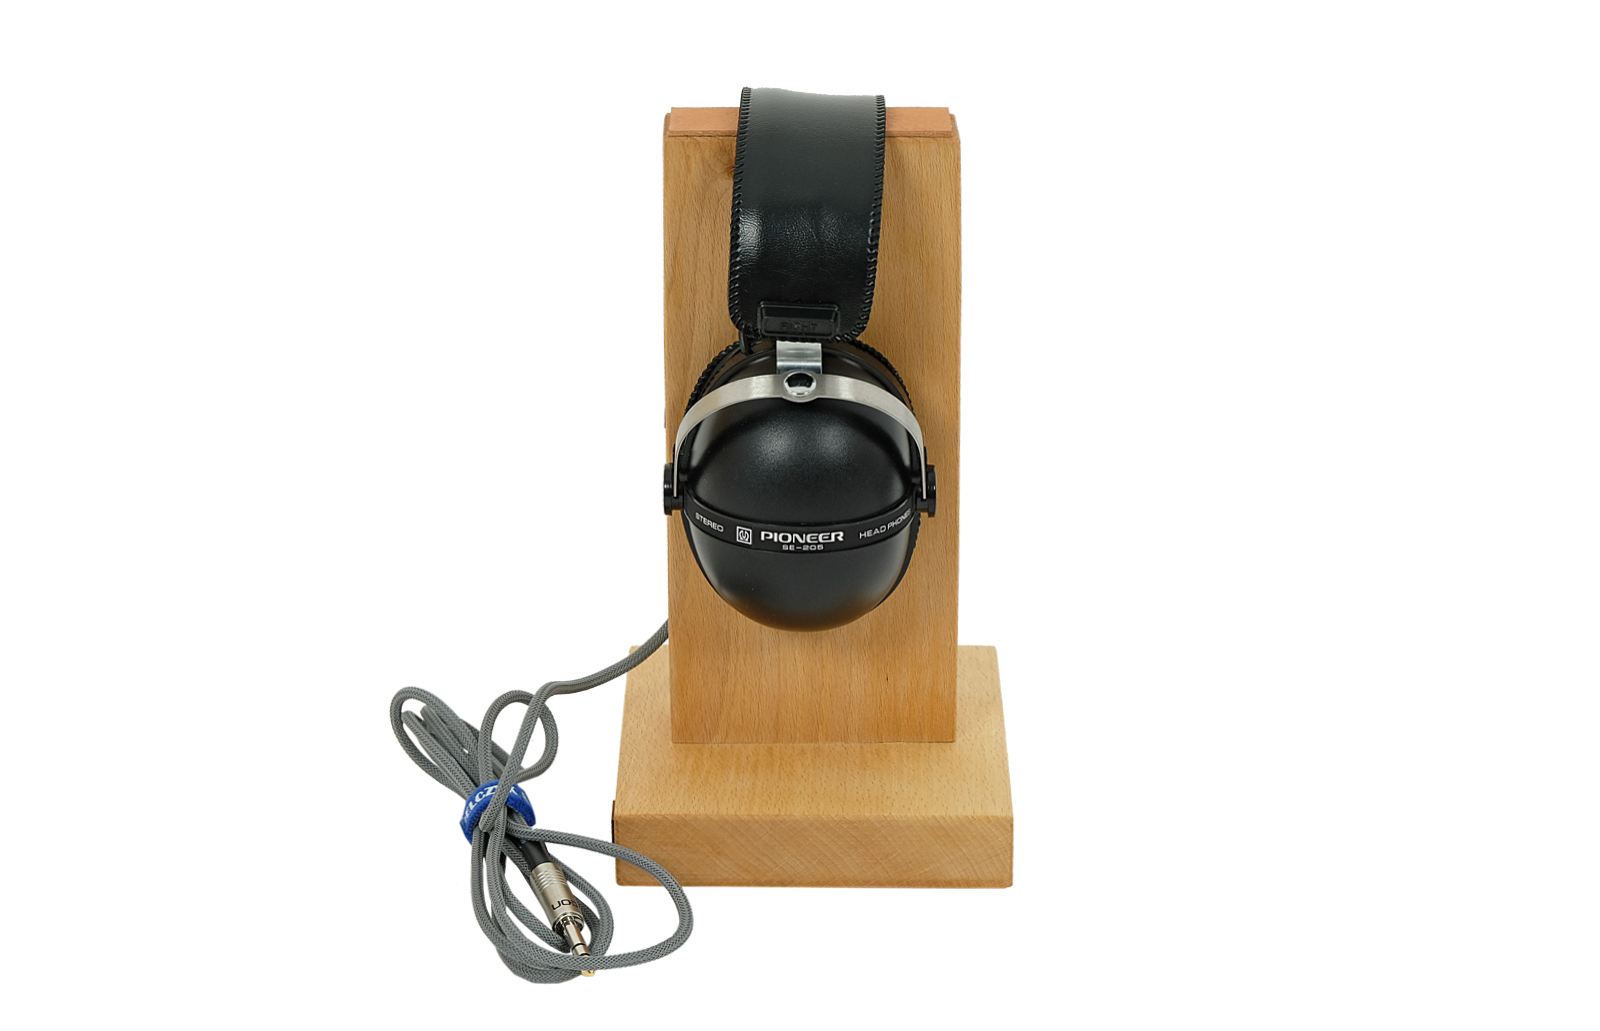 Pioneer SE-205 headphones